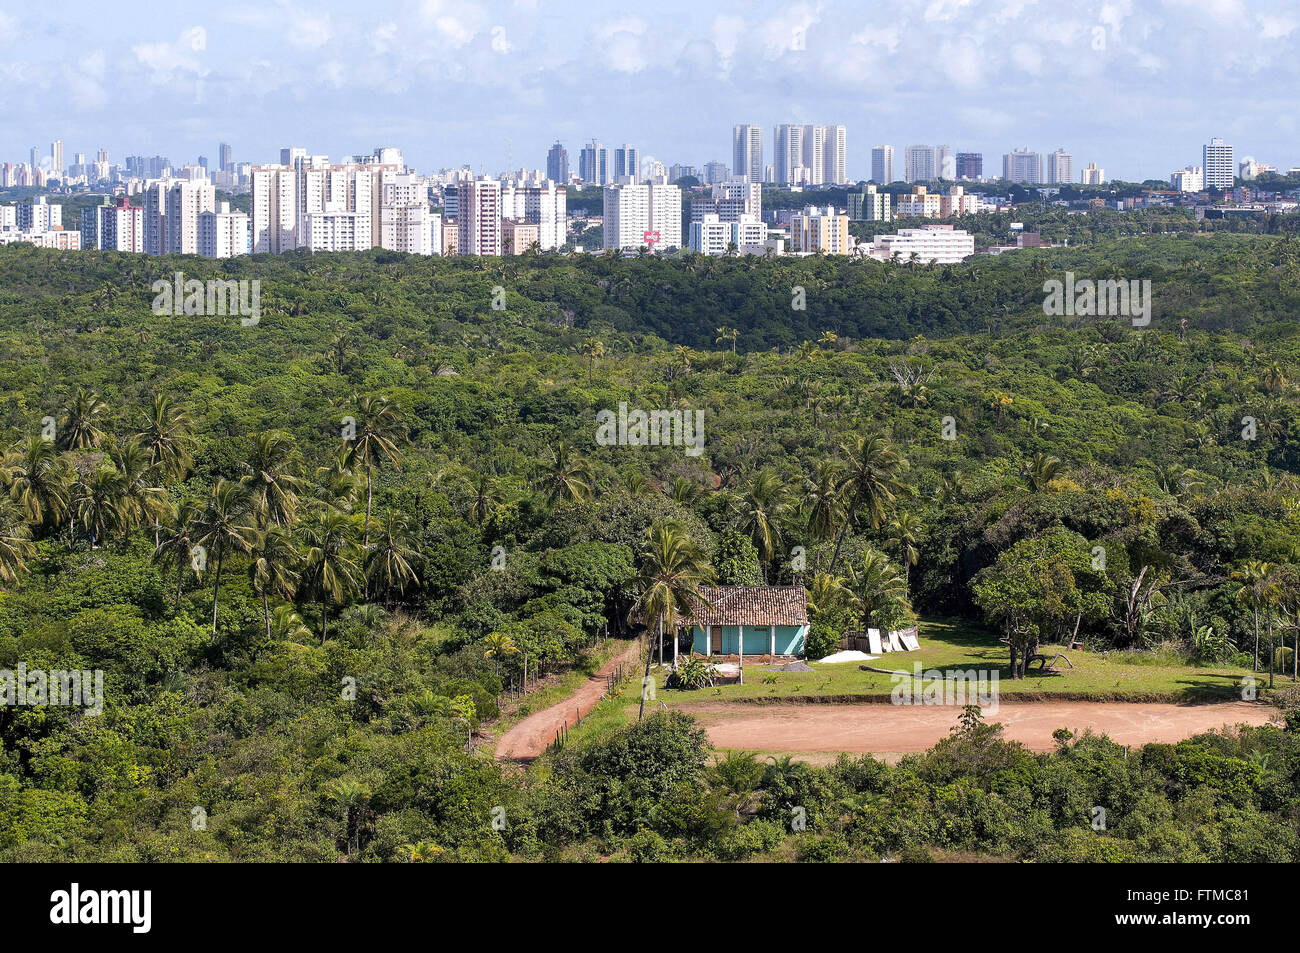 Vista de cima do Parque Metropolitano de Pituacu - bairro Pituacu Foto Stock